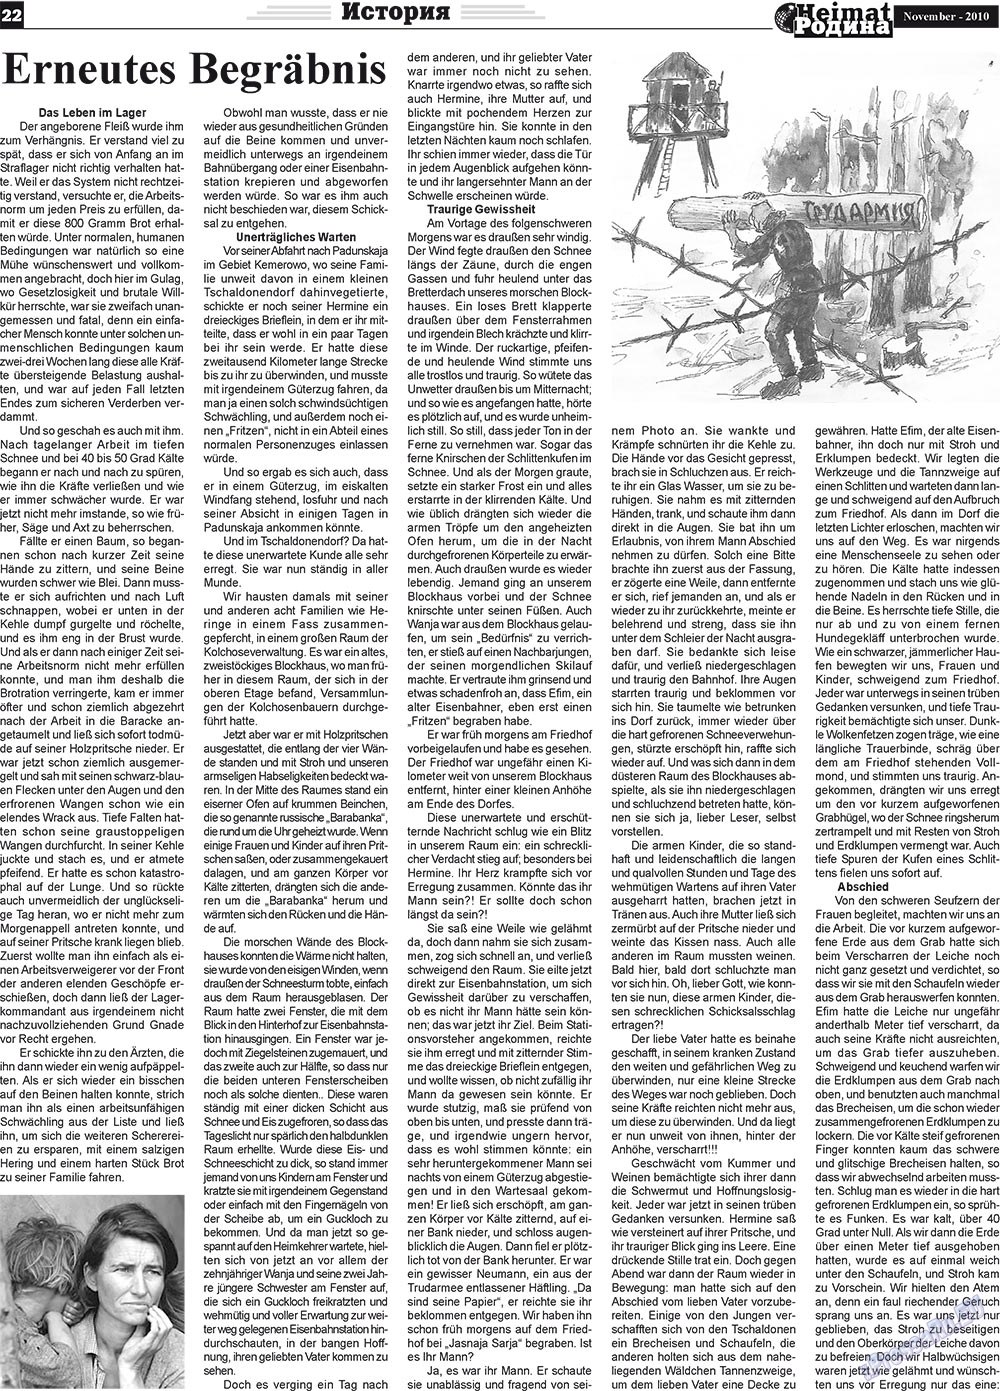 Heimat-Родина (газета). 2010 год, номер 11, стр. 22